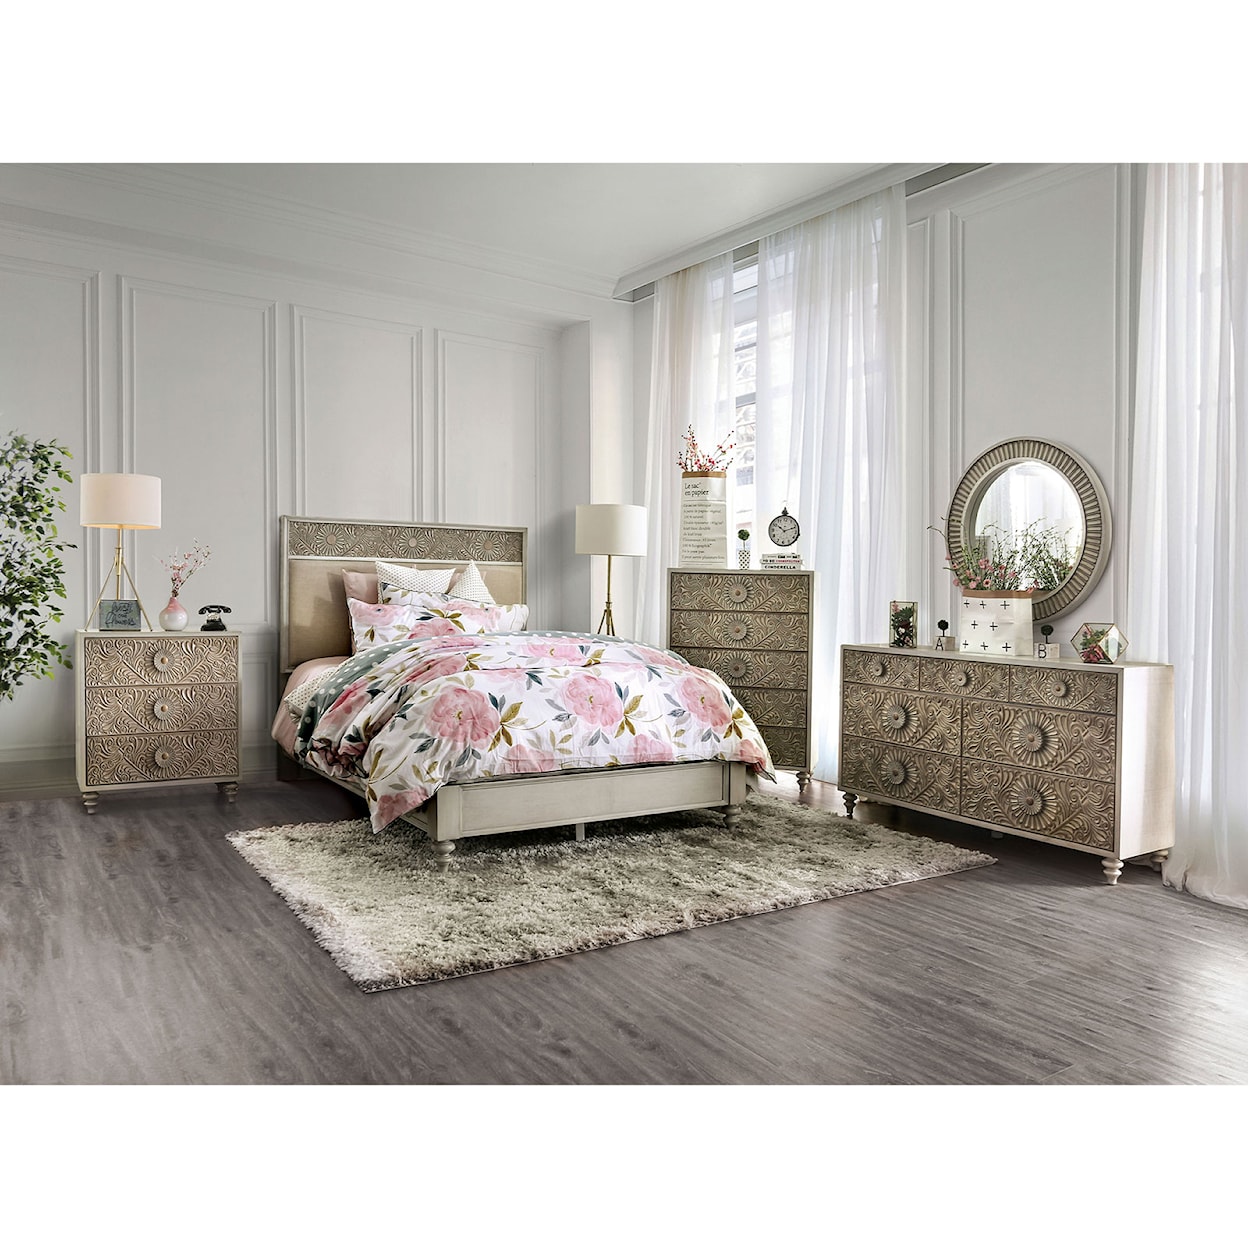 Furniture of America Jakarta 5-Piece Queen Bedroom Set 